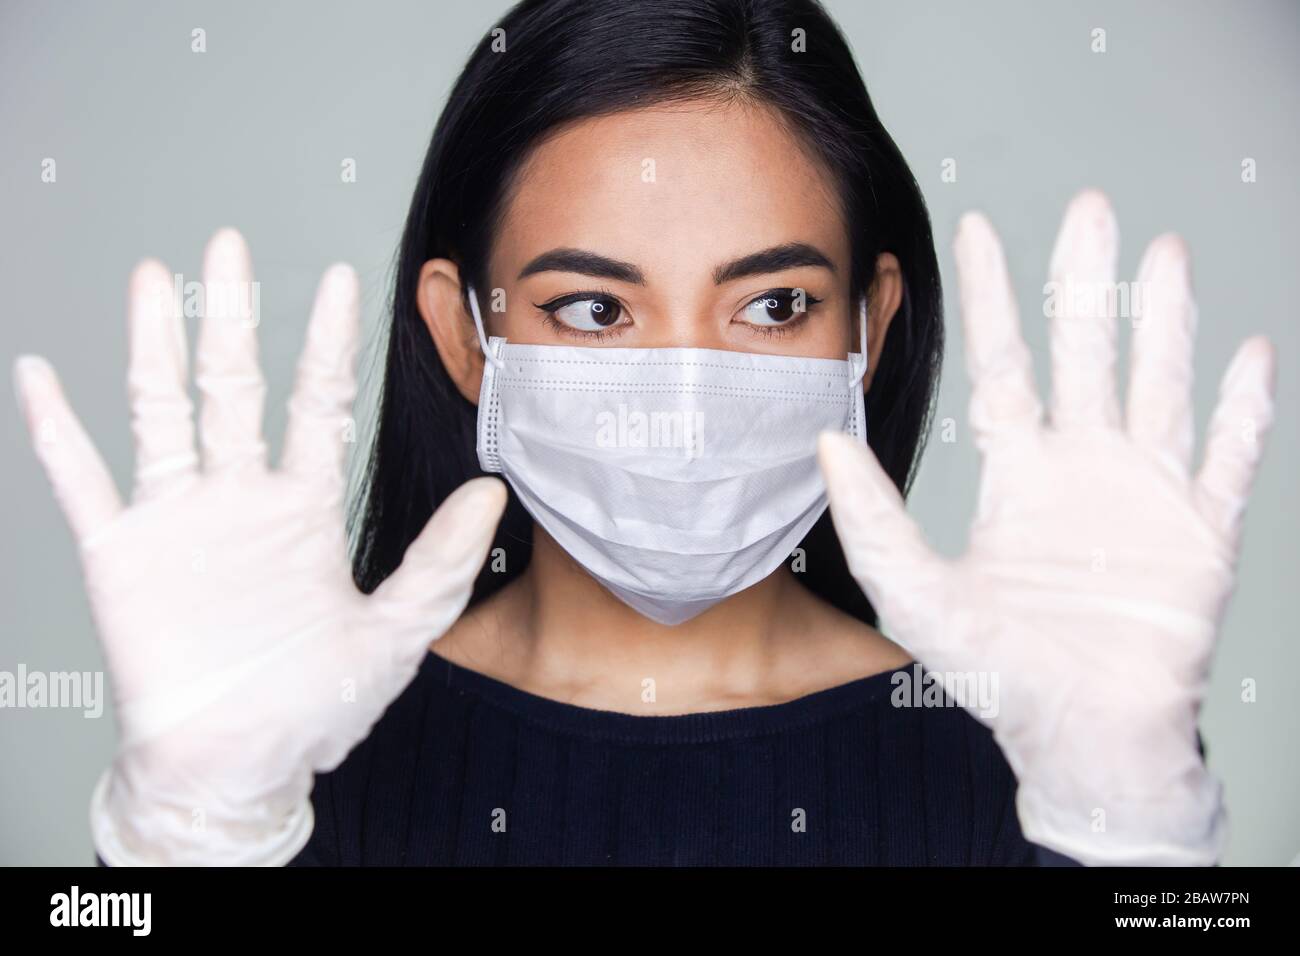 Coronavirus-Ausbruch: Eine asiatische Frau, die medizinische Gummihandschuhe und eine Einwegmaske ansetzt, um ansteckende Viren zu vermeiden. Stockfoto